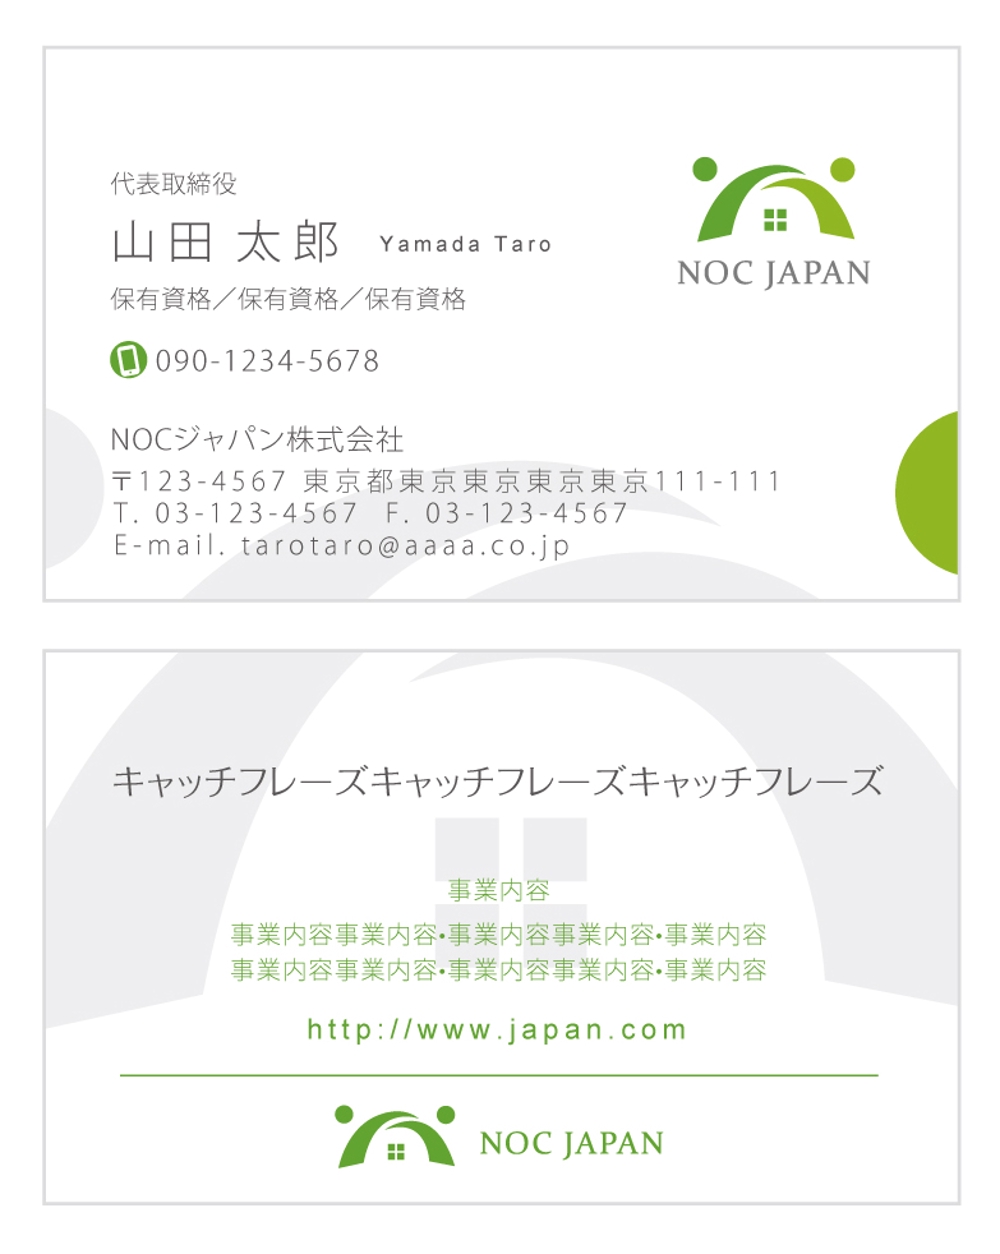 不動産会社「NOCジャパン株式会社」の名刺のデザイン作成をお願いします！